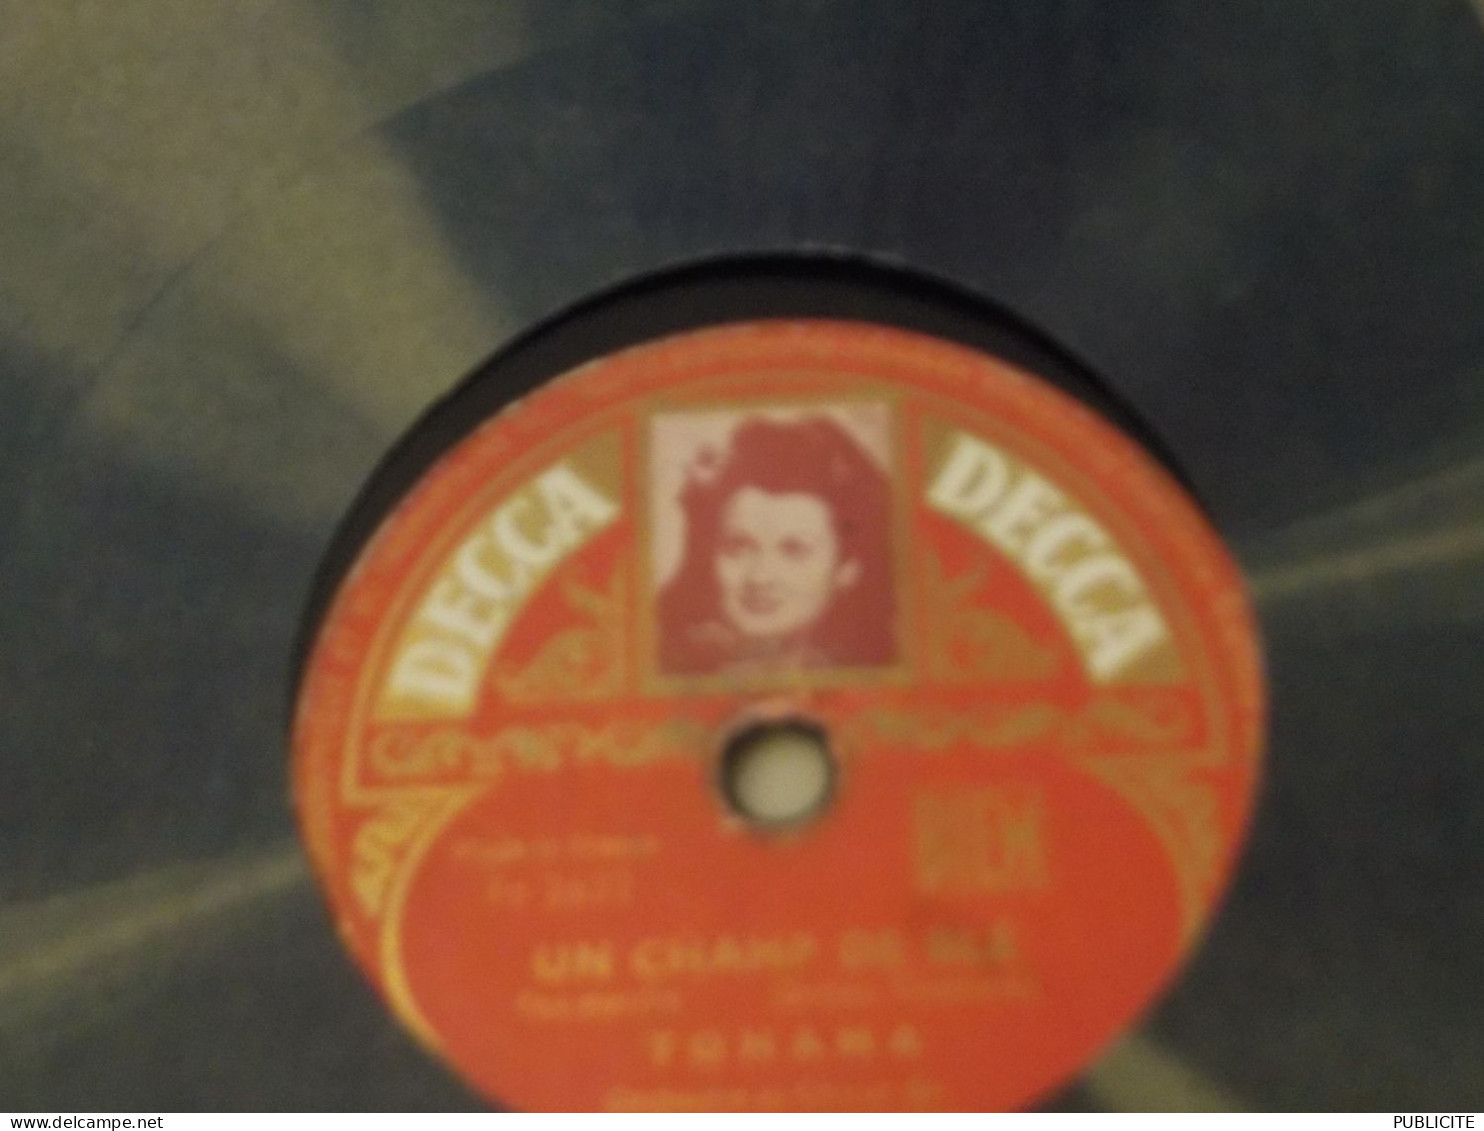 DISQUE 78 TOURS VALSE ET FOX MARCHE DE TOHAMA 1950 - 78 Rpm - Gramophone Records